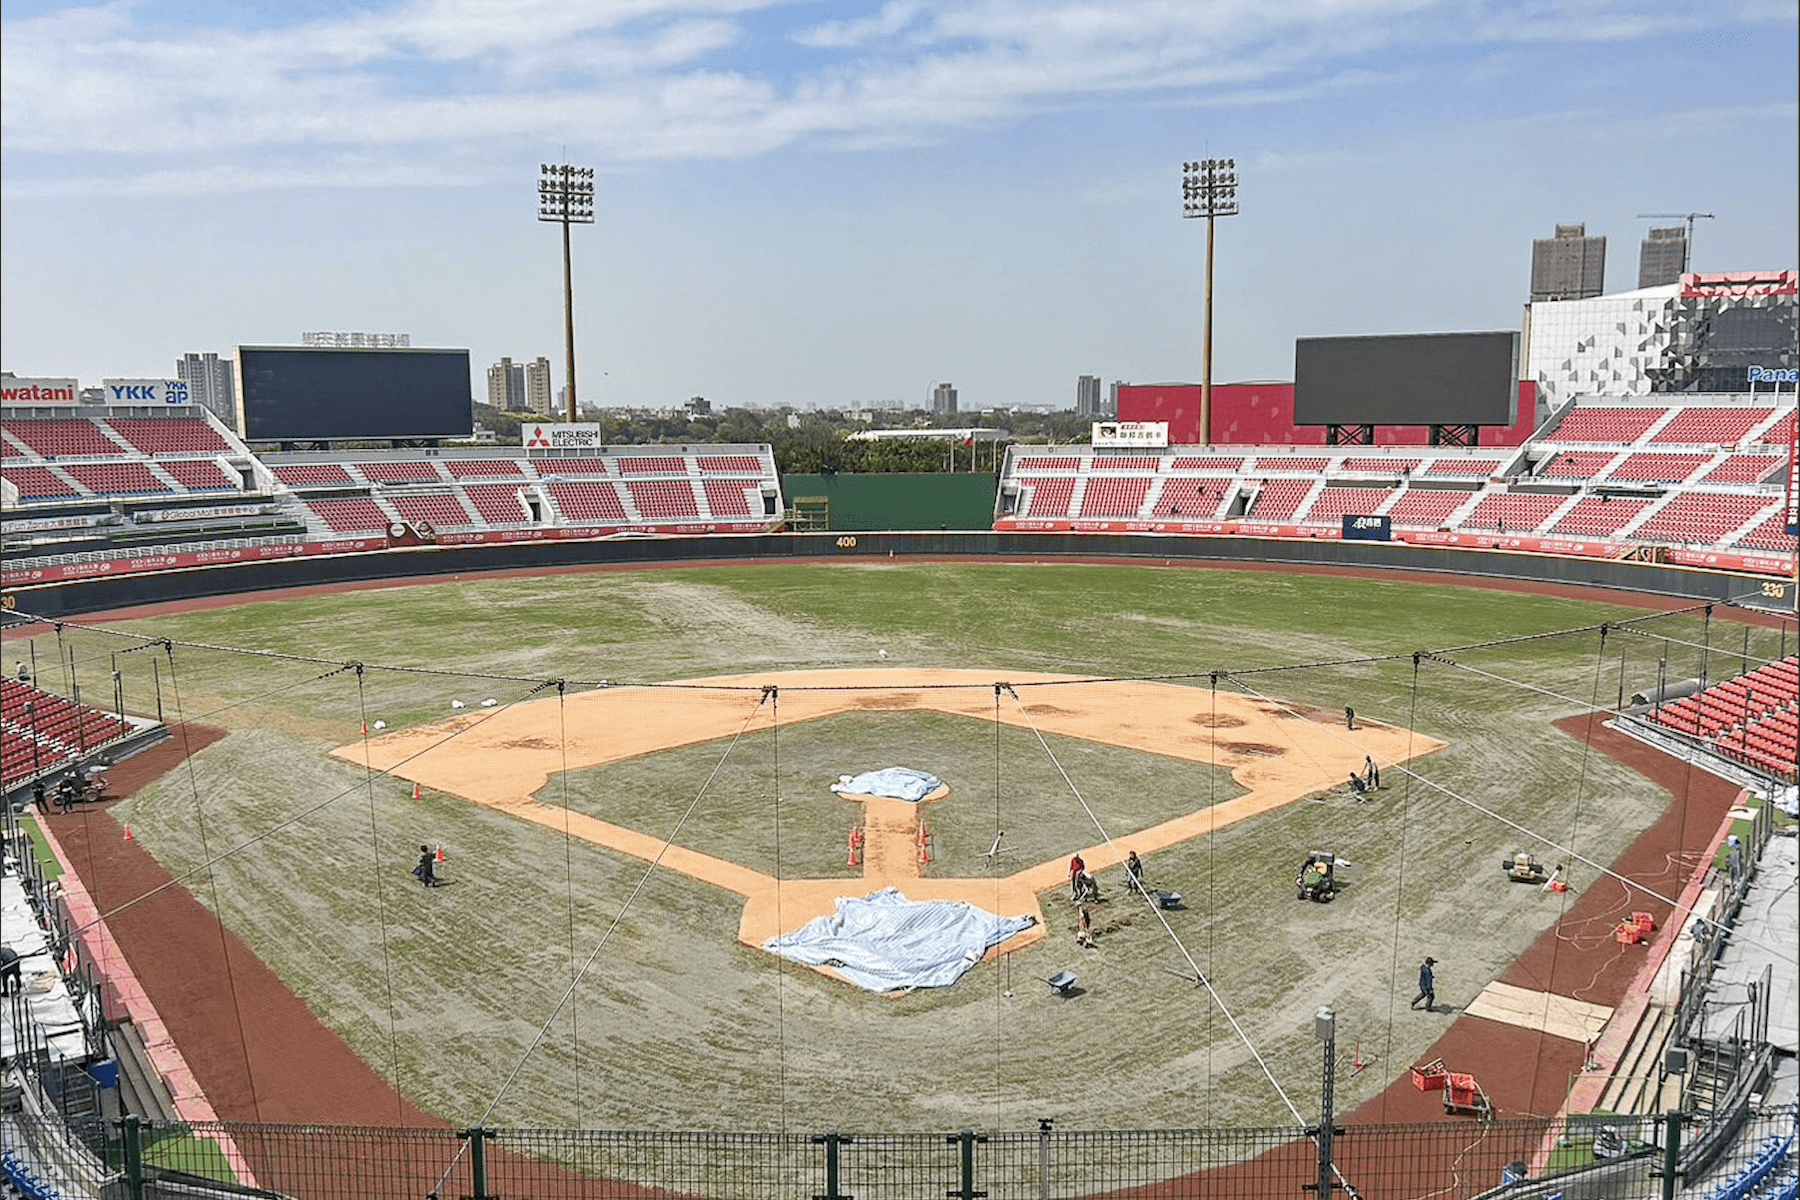 樂天桃園國際棒球場改善工程進度近9成-美日韓技師協助鋪設紅土